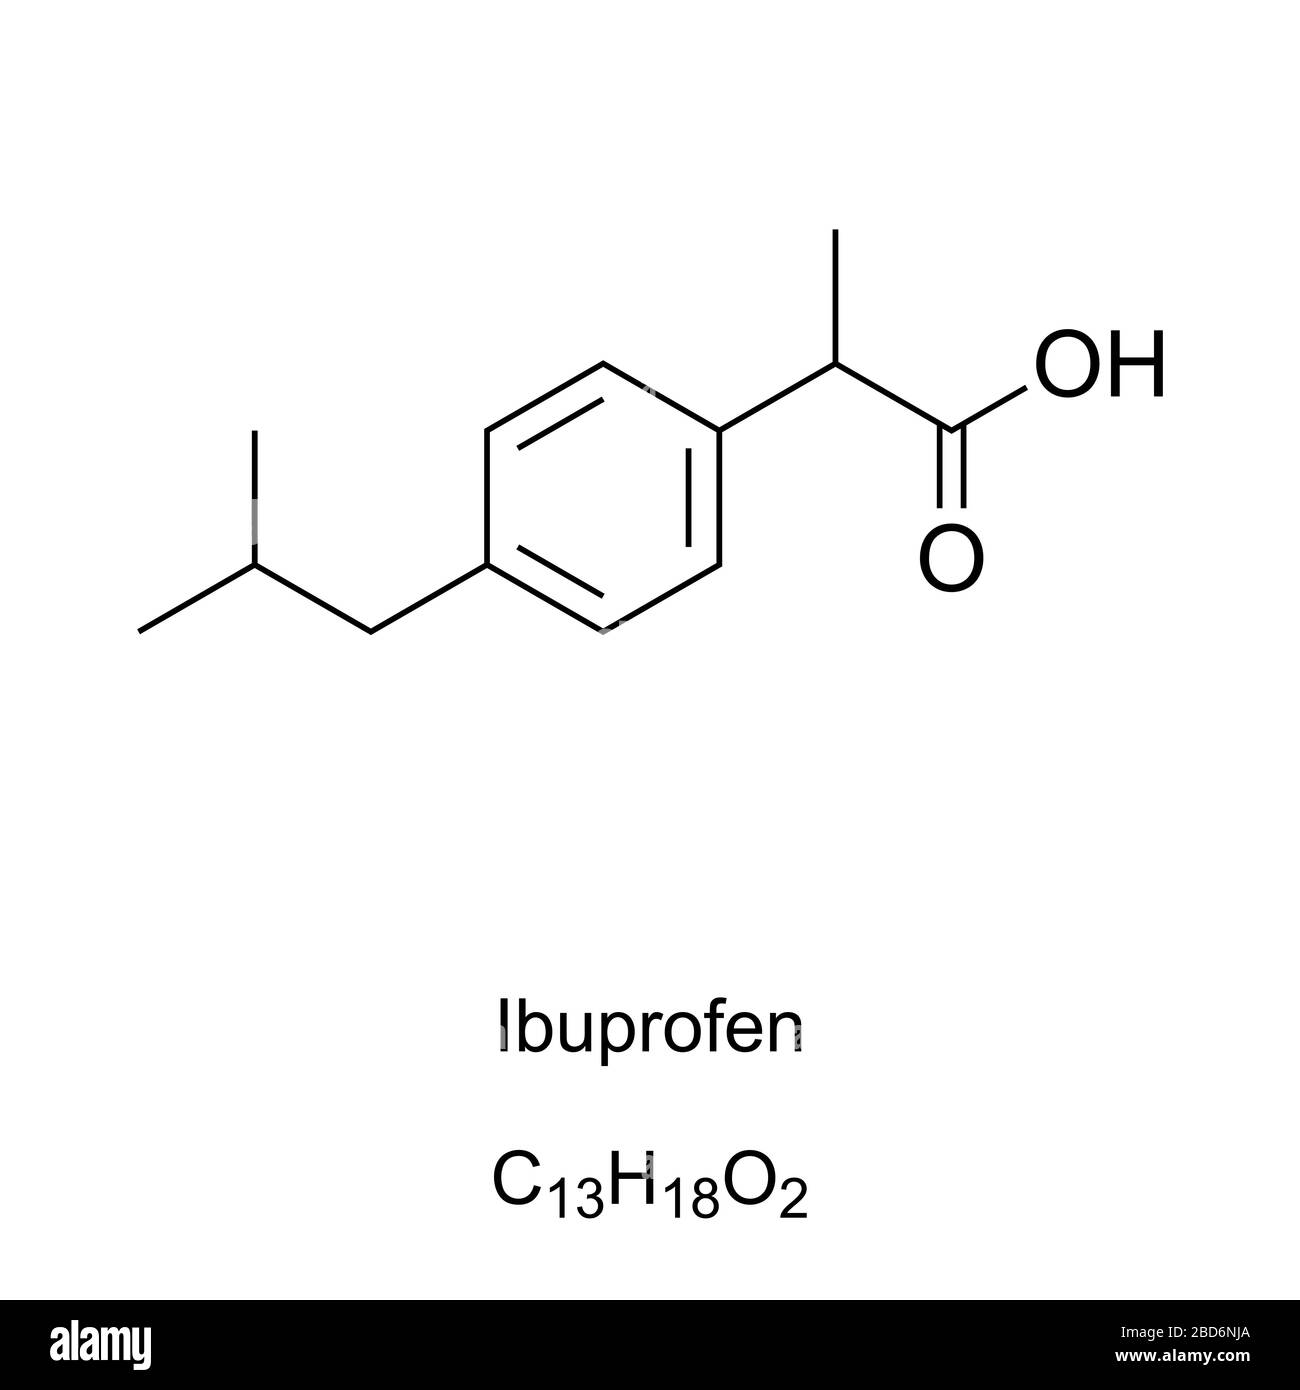 Ibuprofen, Formel und Molekularstruktur. Medikamente zur Behandlung von Schmerzen, Fieber und Entzündungen. Medikation in der NSAID-Klasse. Eines der essentiellen Medikamente. Stockfoto